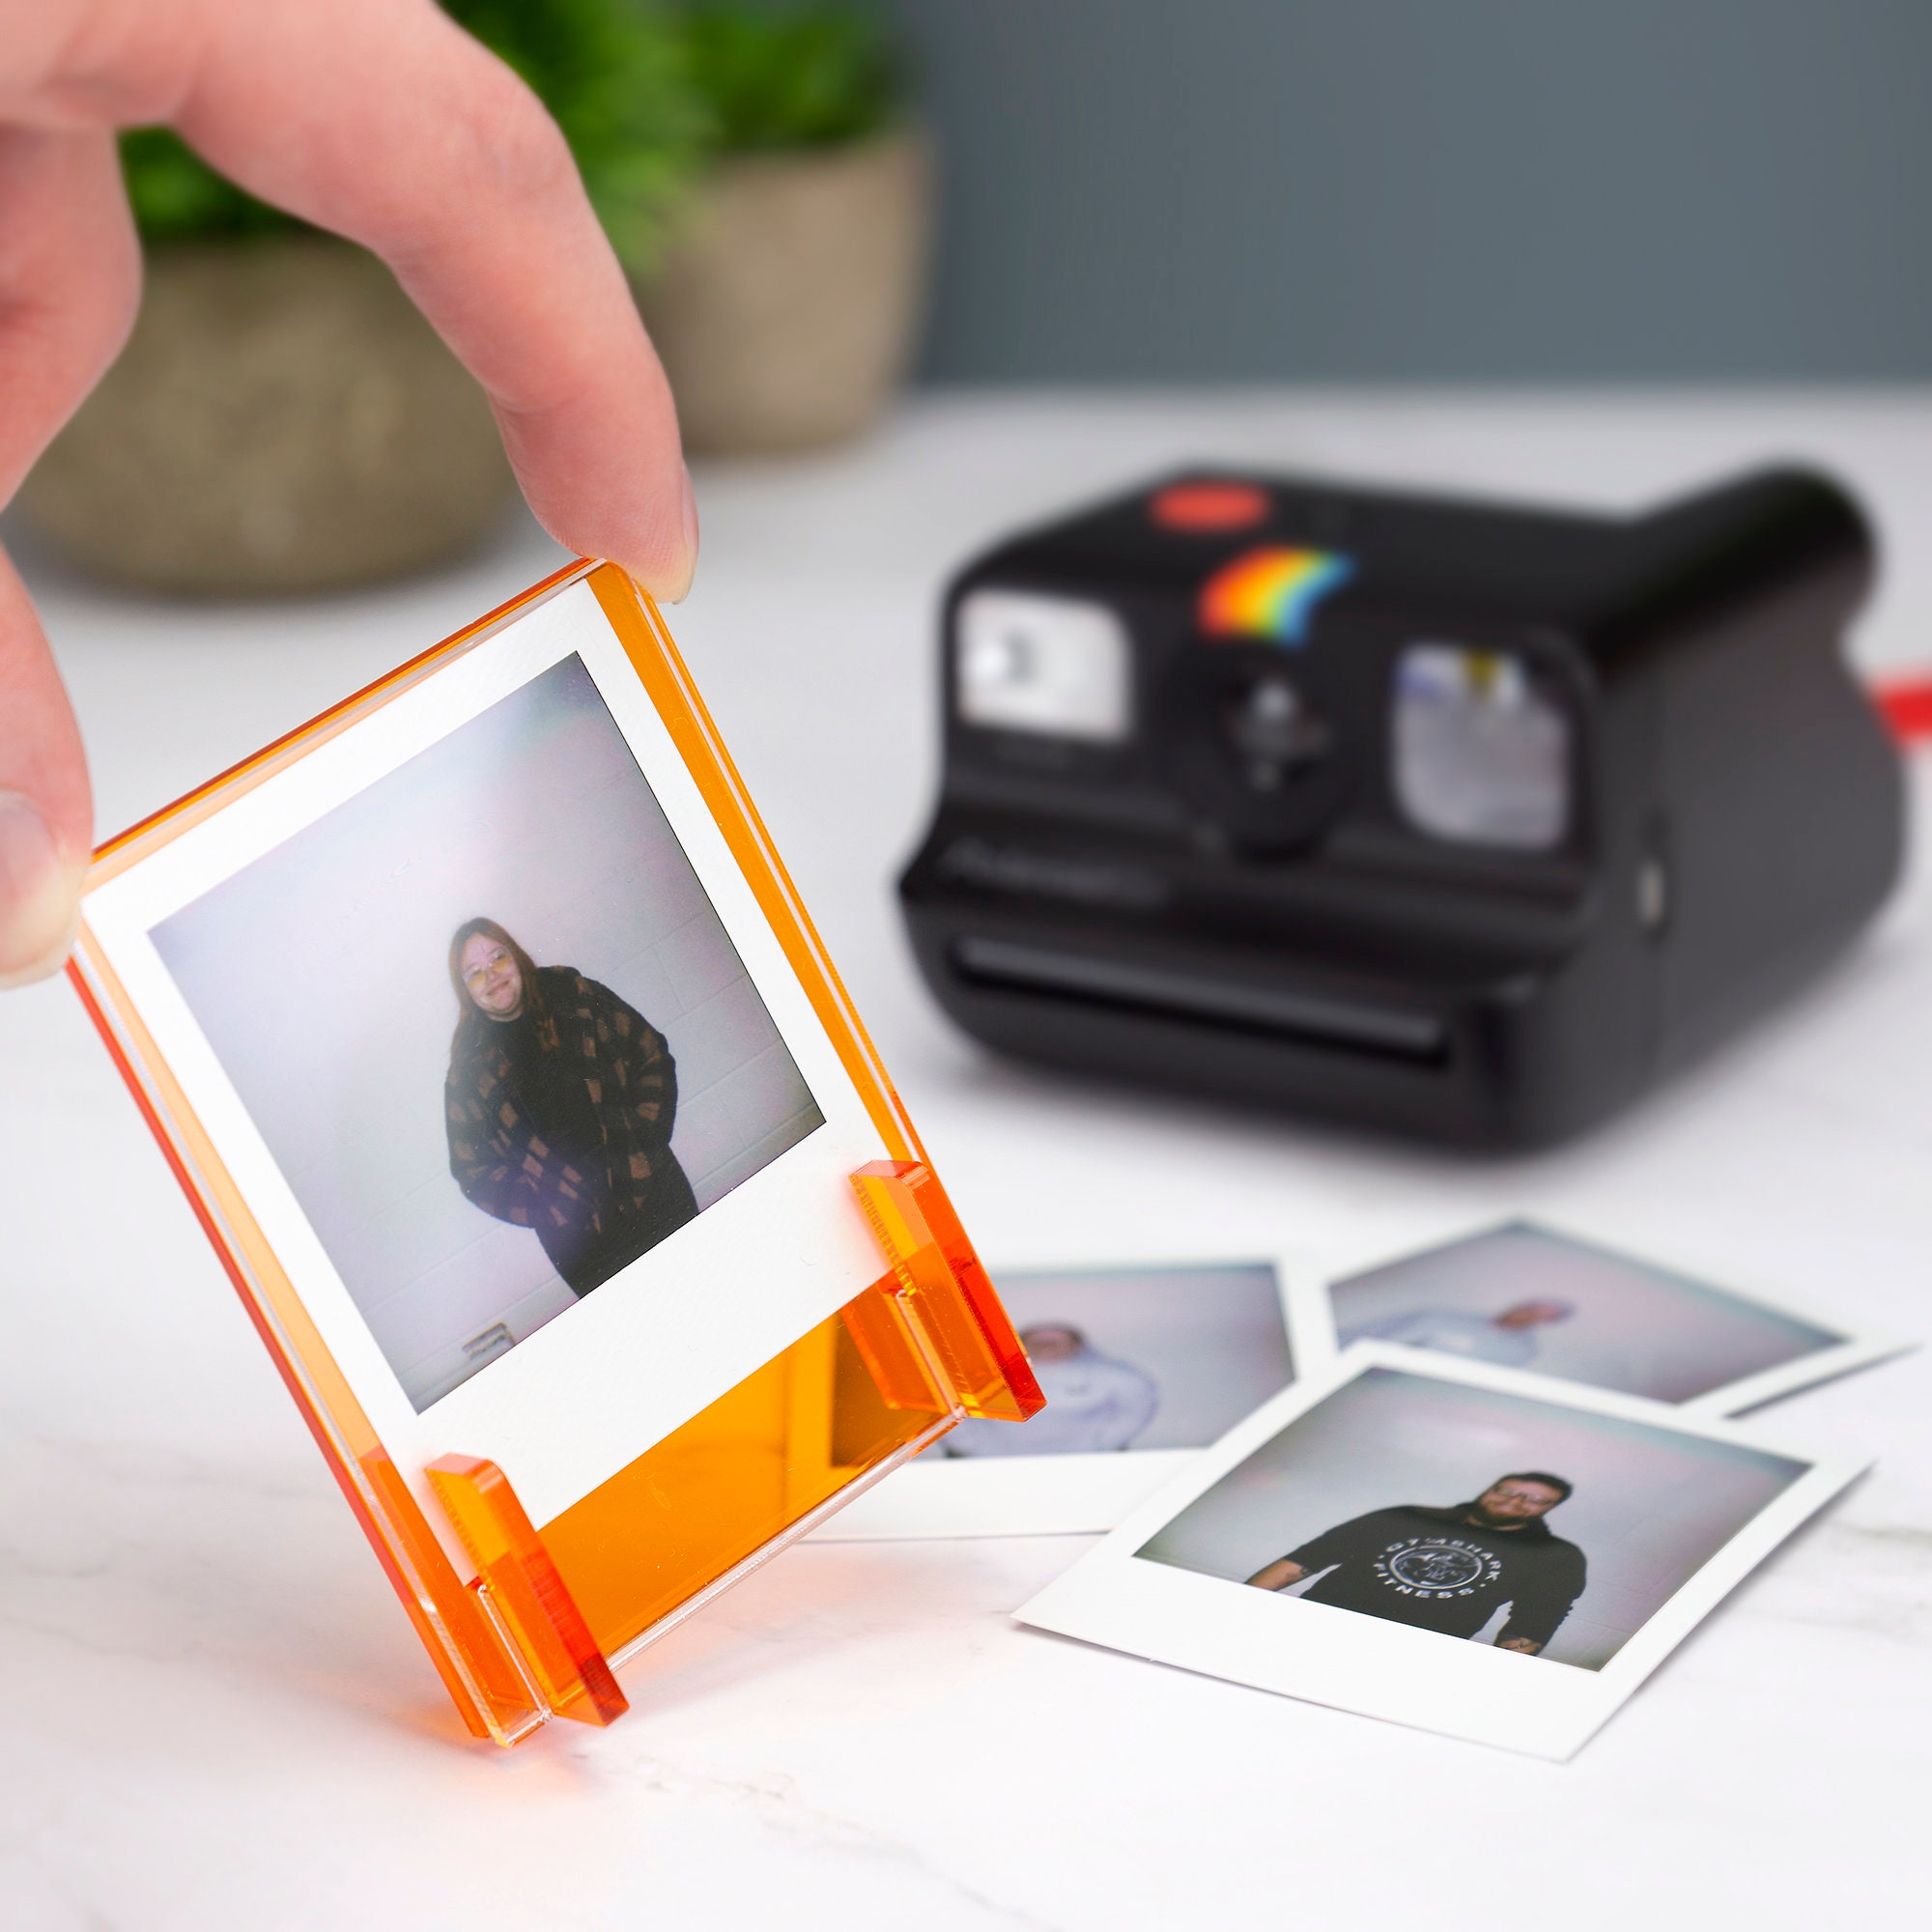 Instax Mini Polaroid Camera — The Woodlands